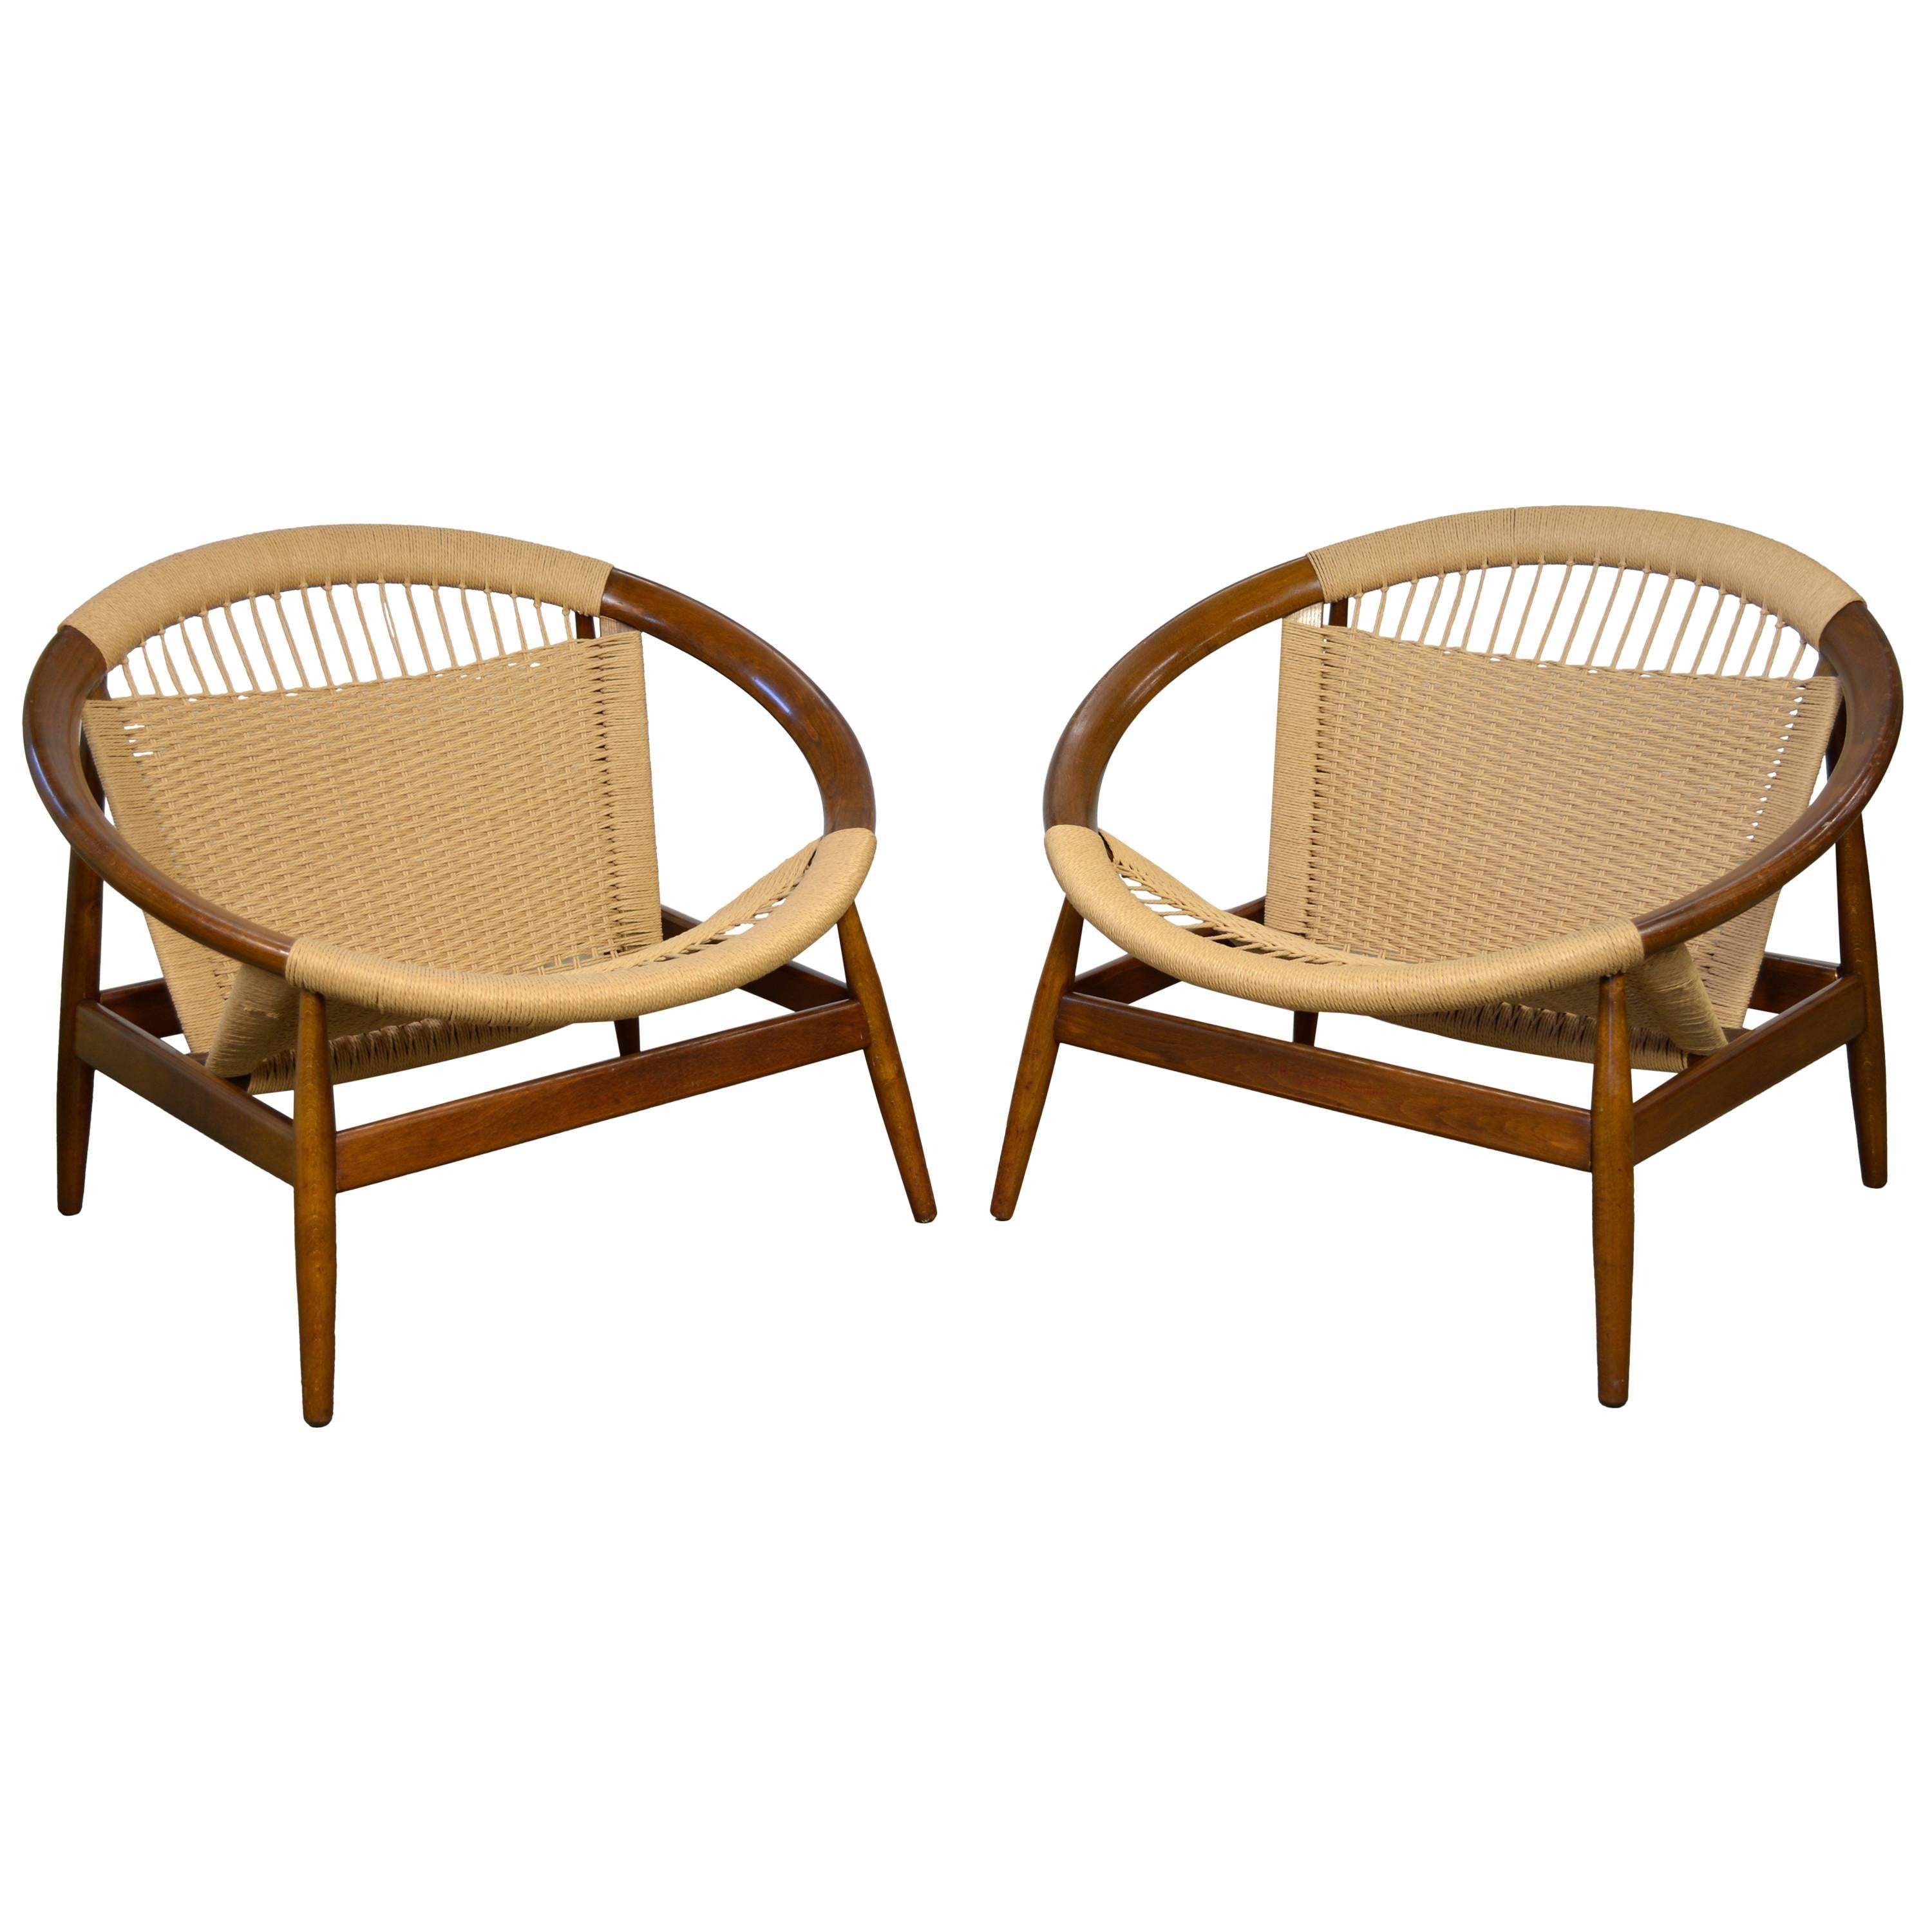 Illum Wikkelsø Pair of "Ringstol" Chairs